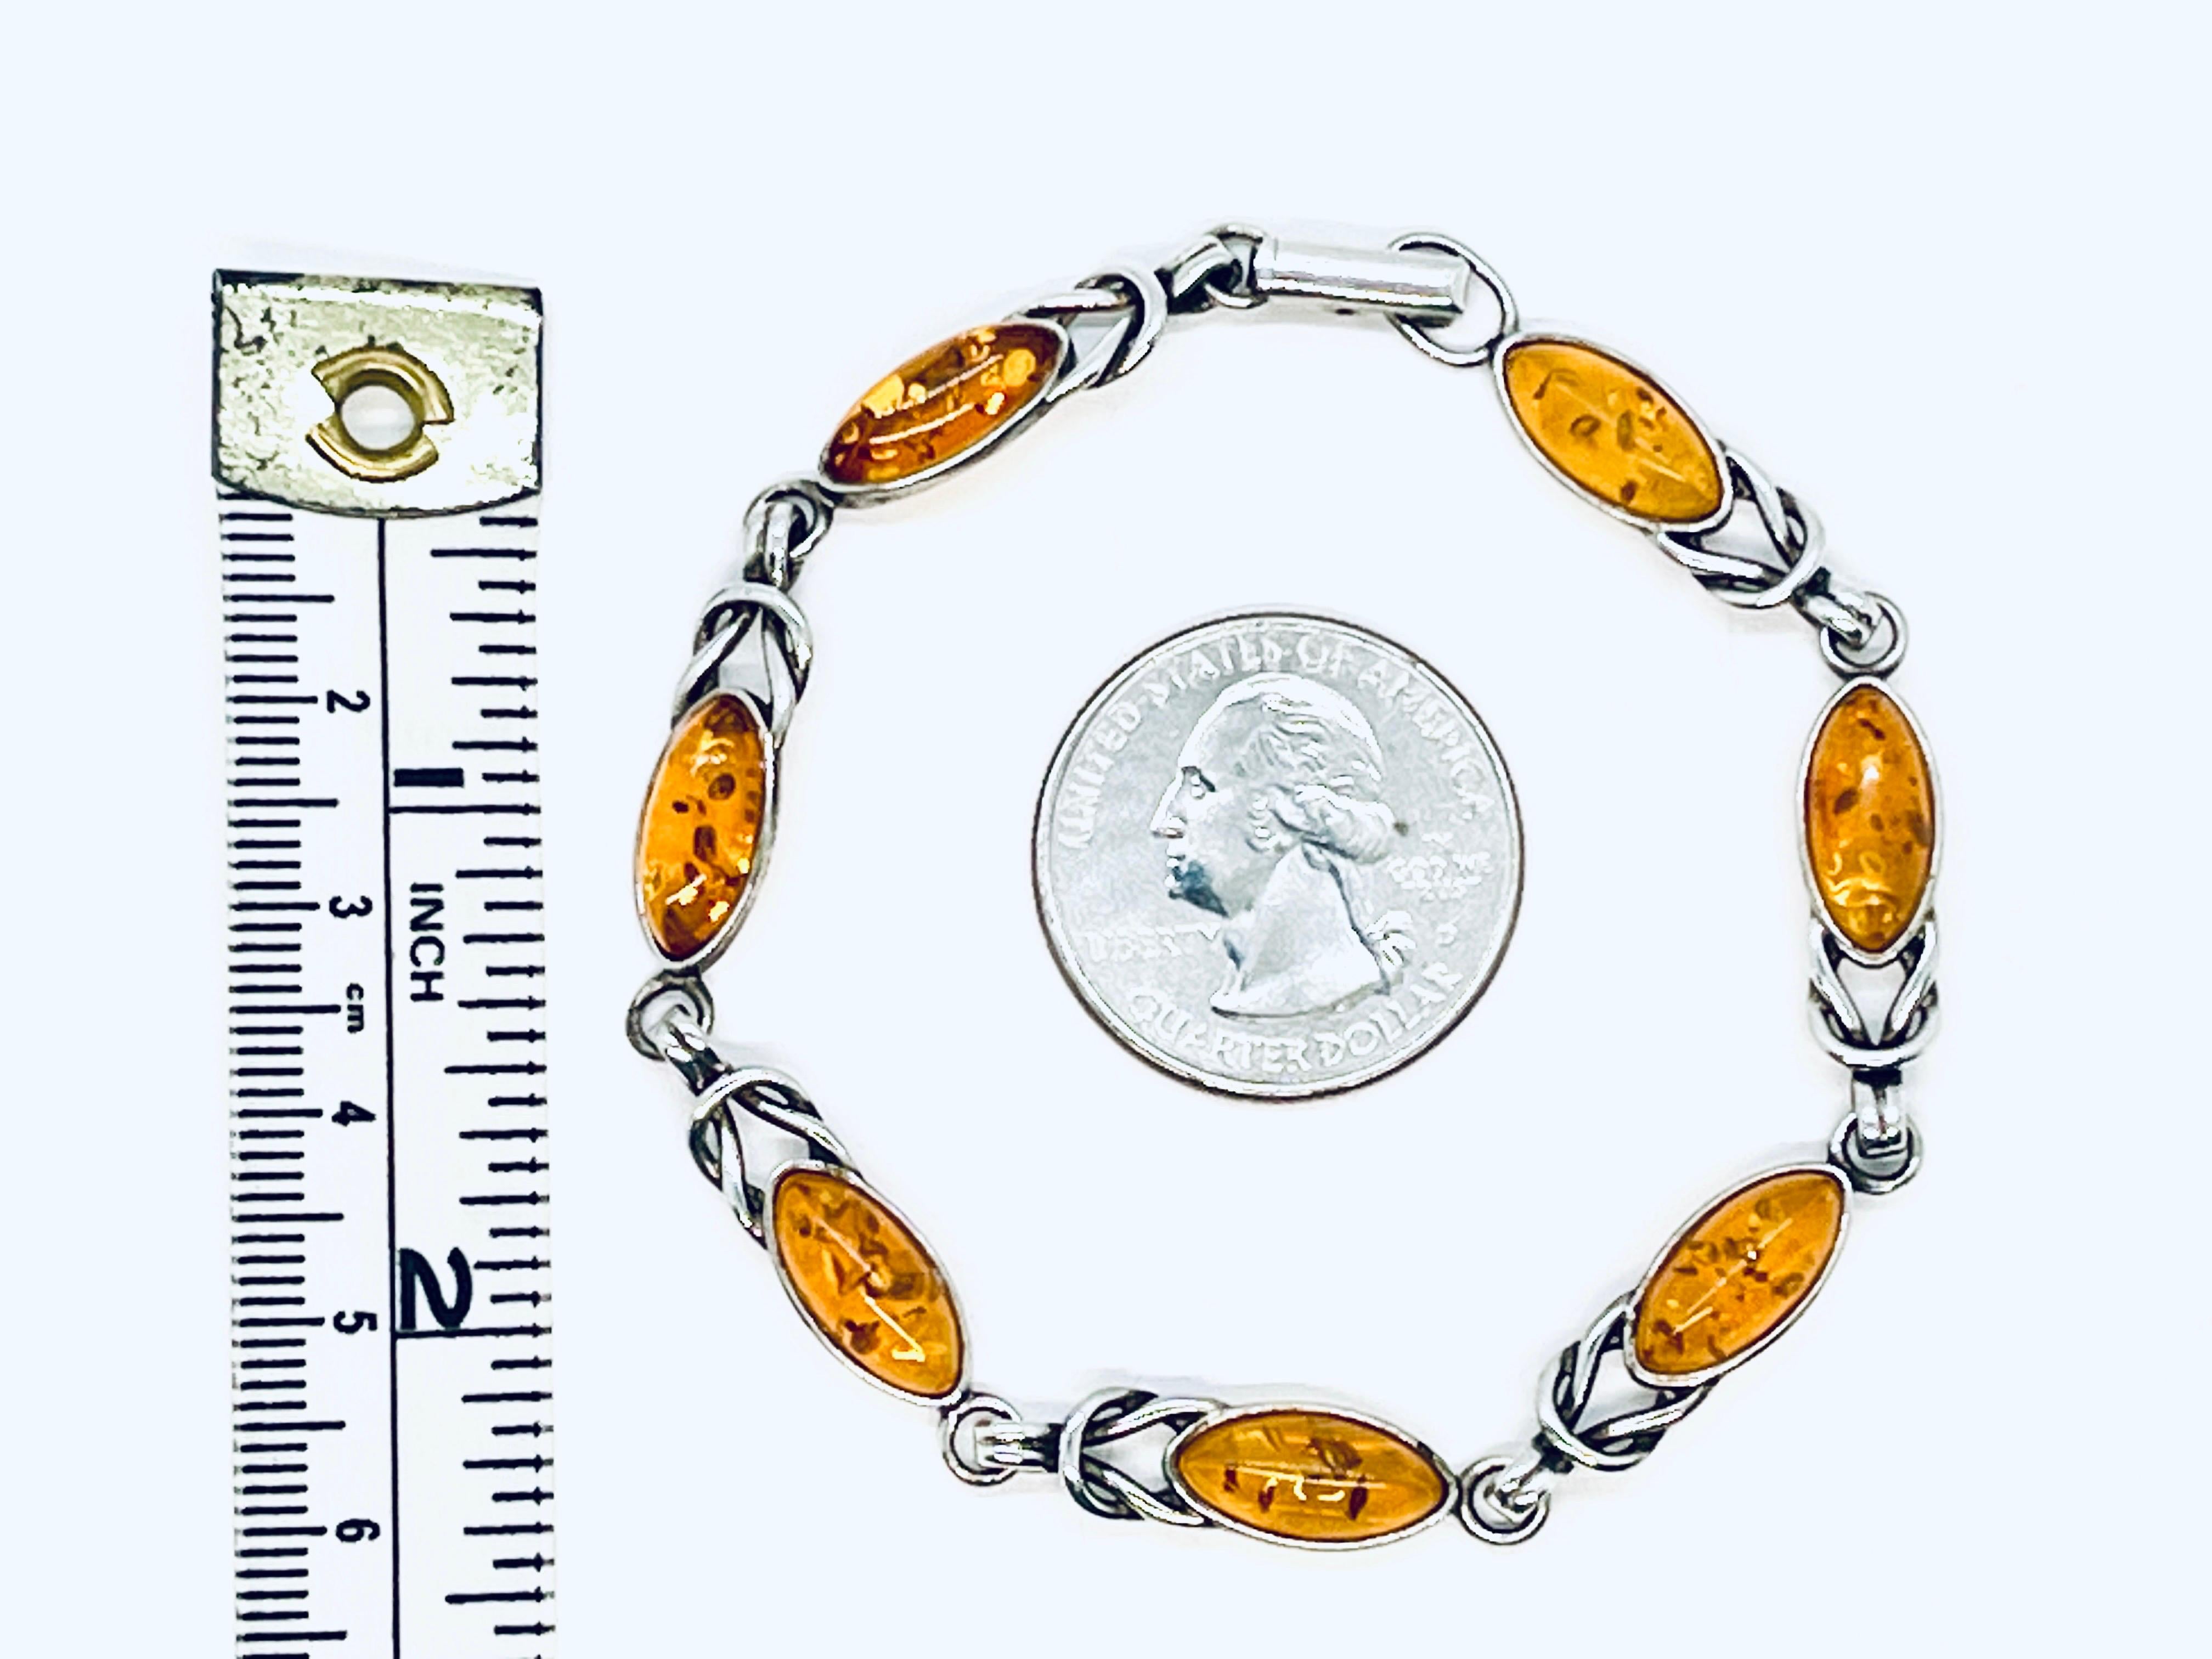 7 cabochons marqués d'ambre baltique sur un bracelet à maillons en argent (marqué), avec des détails de faux nœuds. Fermoir à charnière. Deux marques : Une seule visible à la loupe sur l'argent sous l'un des cabochons d'ambre près du fermoir. La